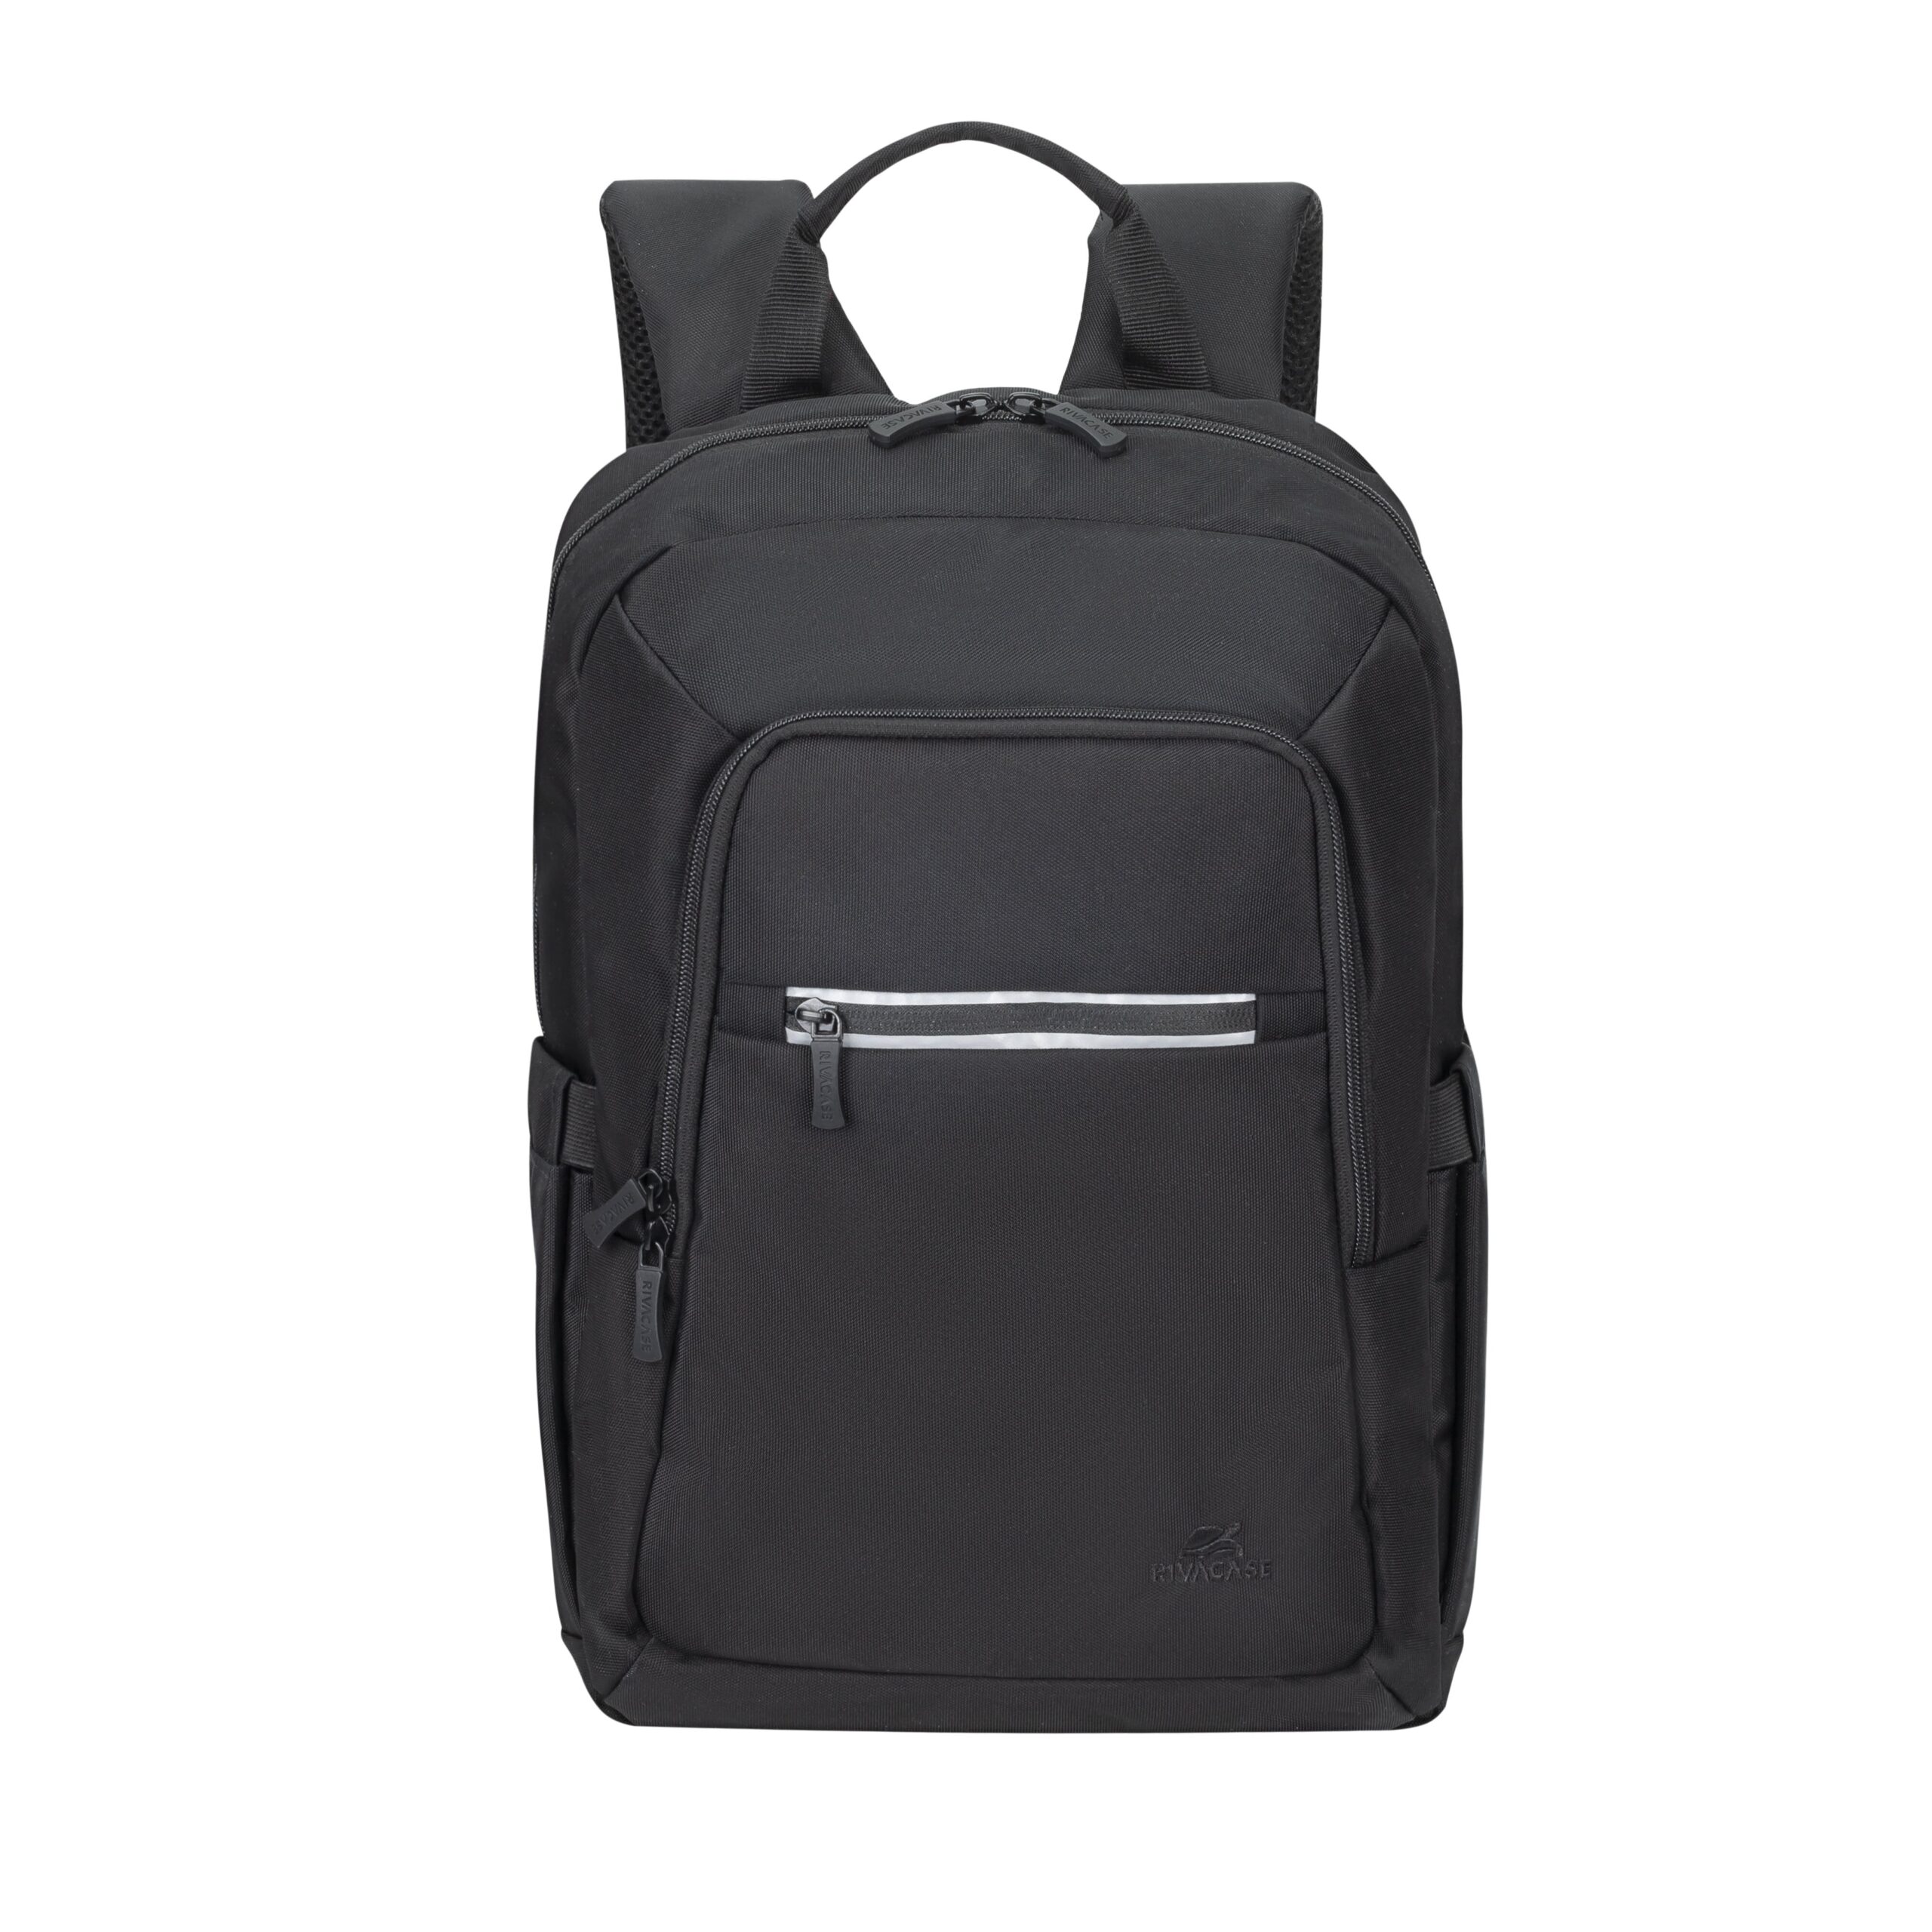 RIVA 7523 noir ECO sac à dos pour ordinateur portable